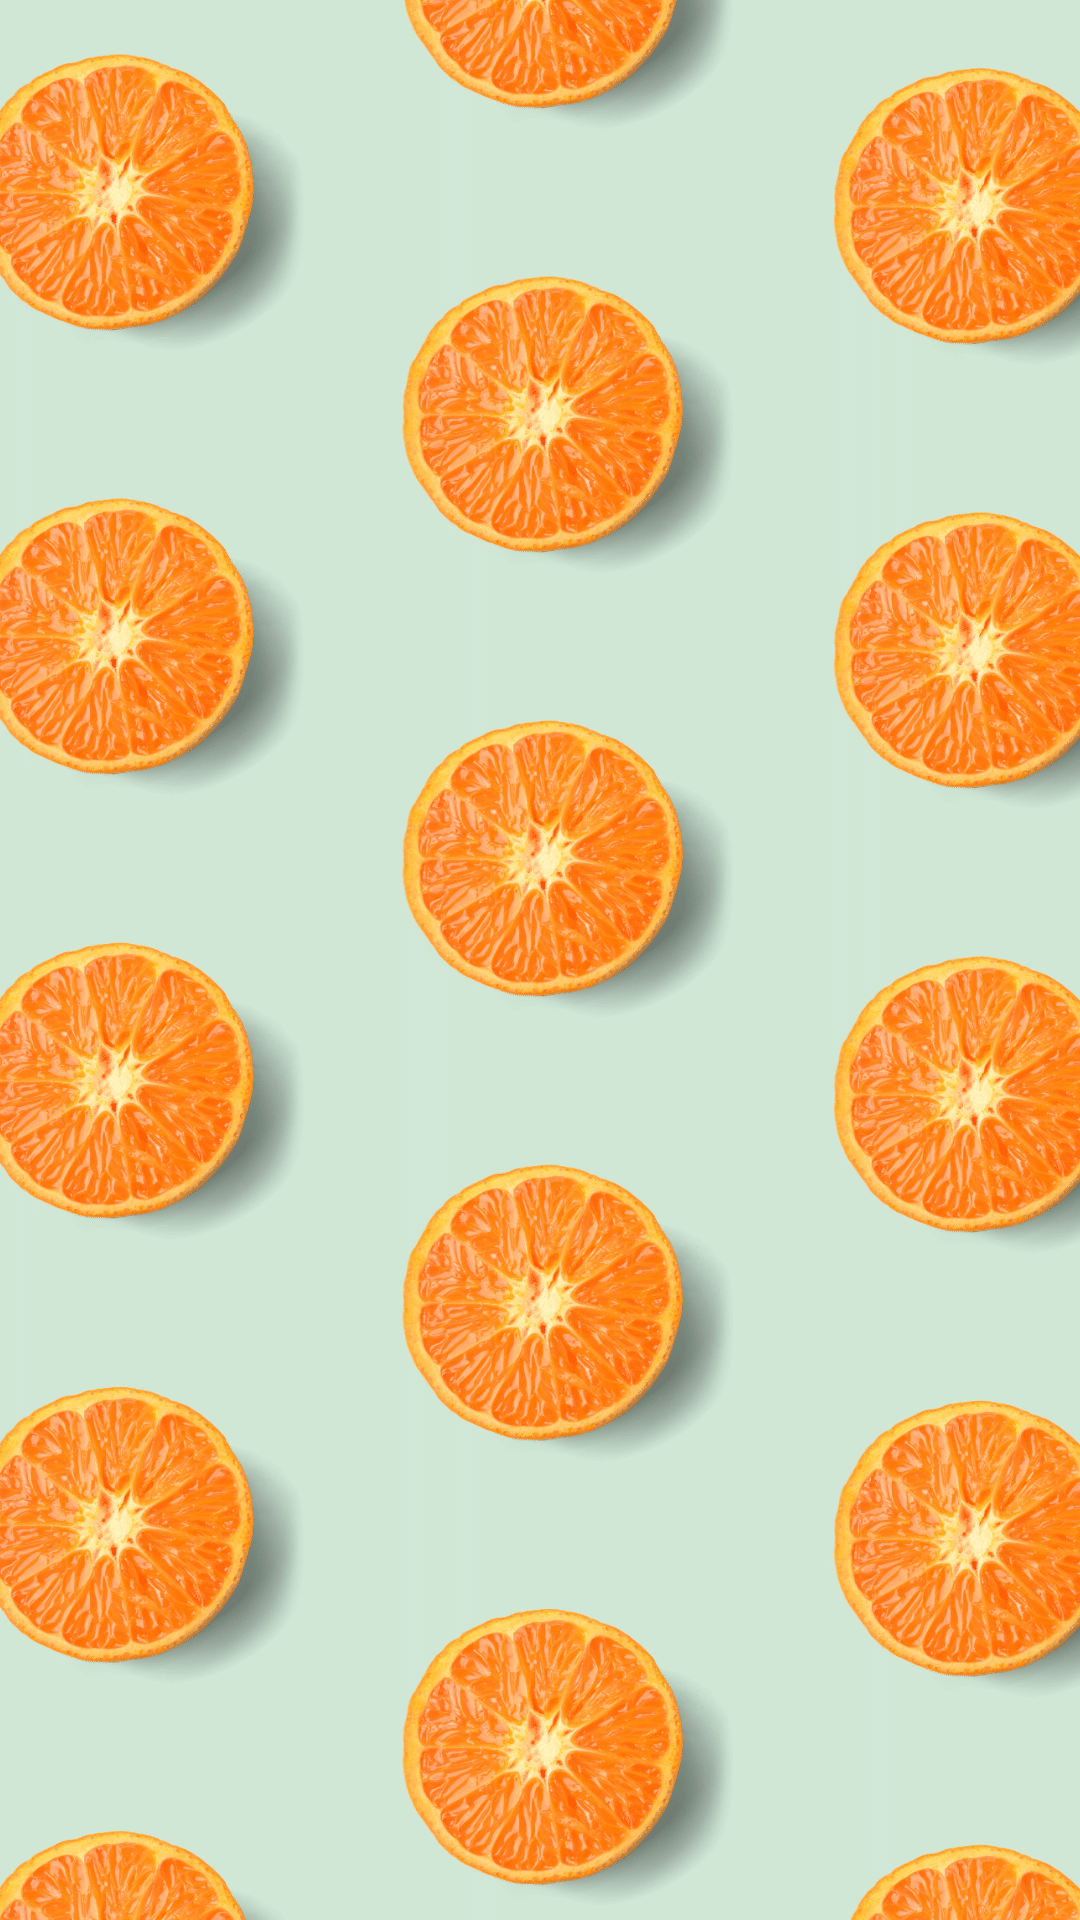 Cute Orange iPhone Wallpapers - Top Free Cute Orange iPhone ...